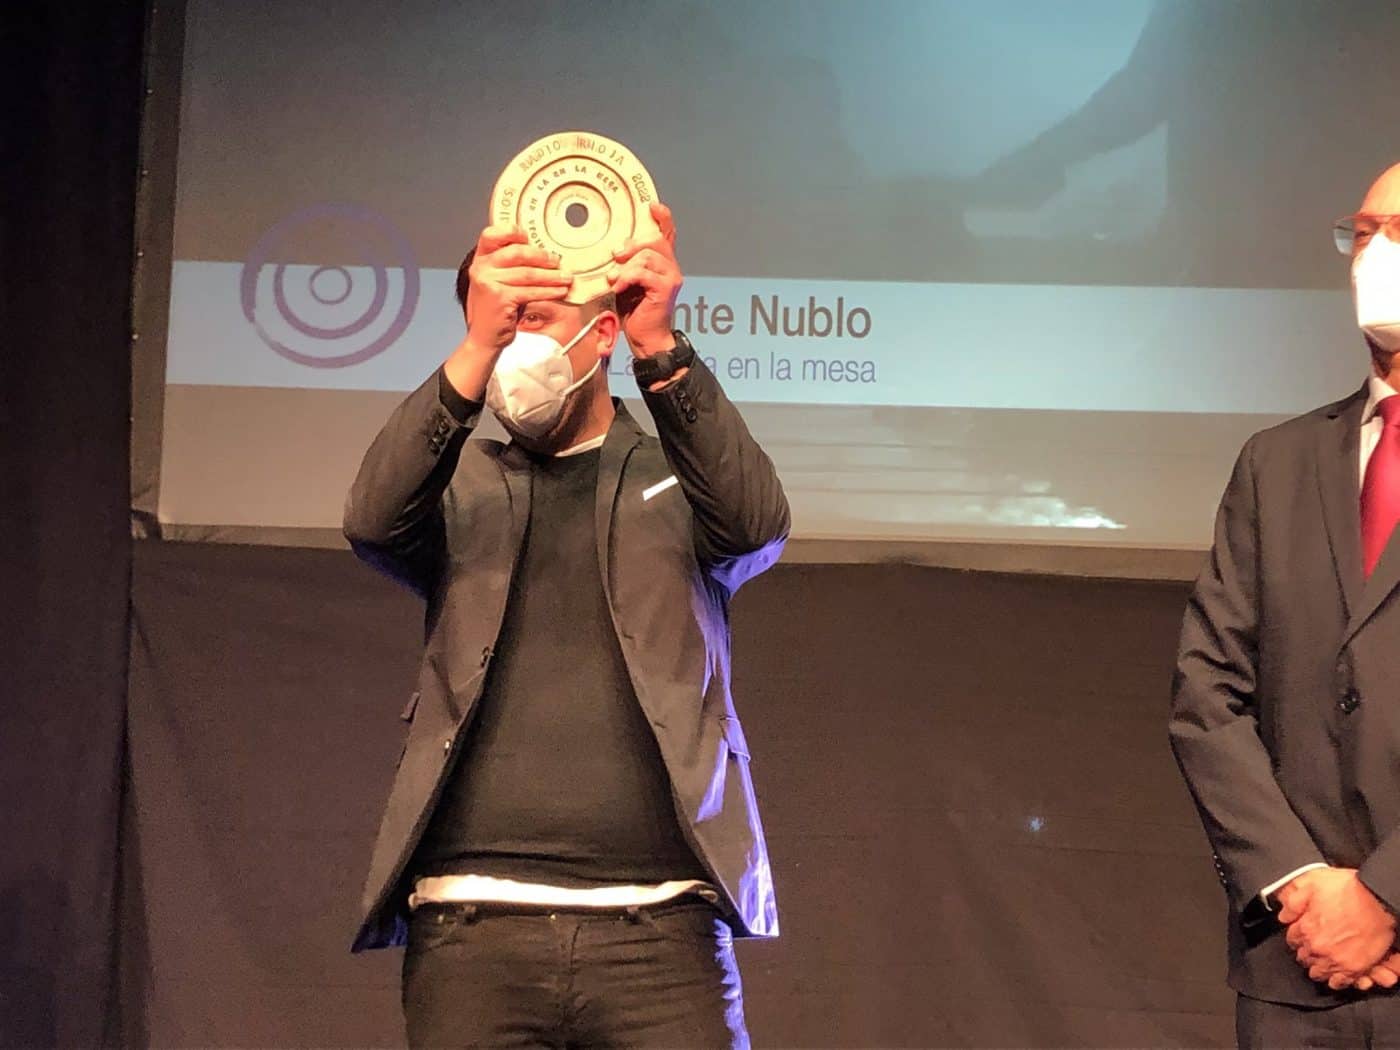 Nublo recibe el Premio Radio Rioja 'La Rioja en la Mesa' 2